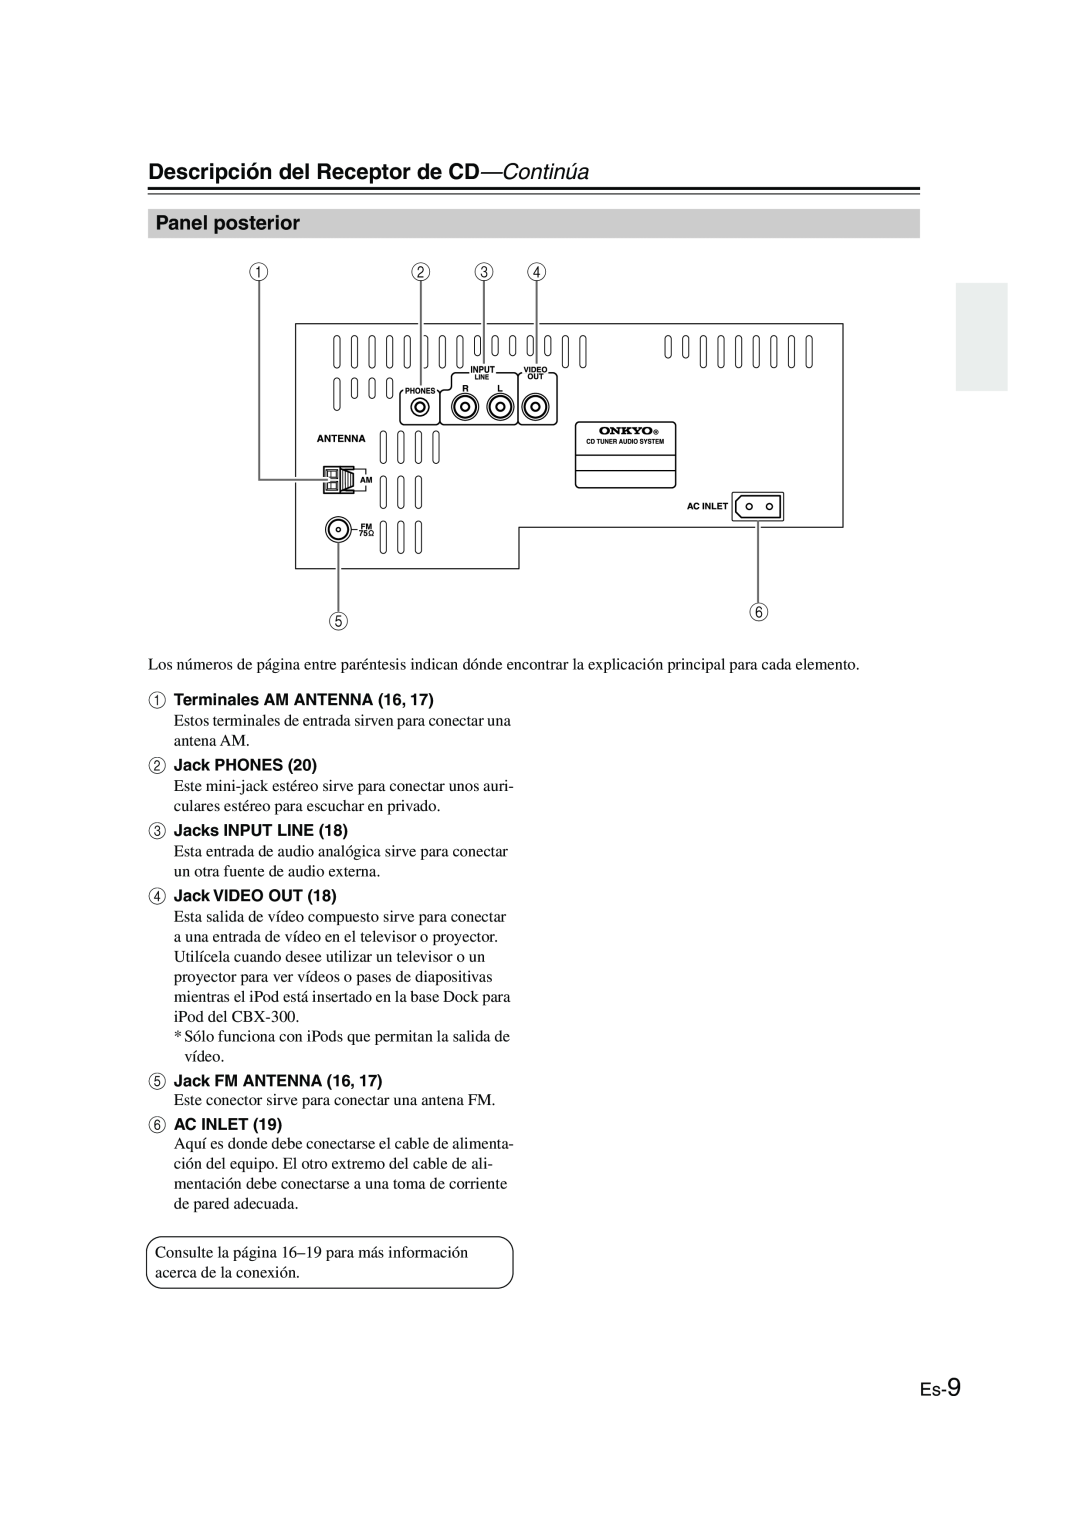 Onkyo CBX-300 instruction manual Panel posterior, Es-9, Descripción del Receptor de CD—Continúa 